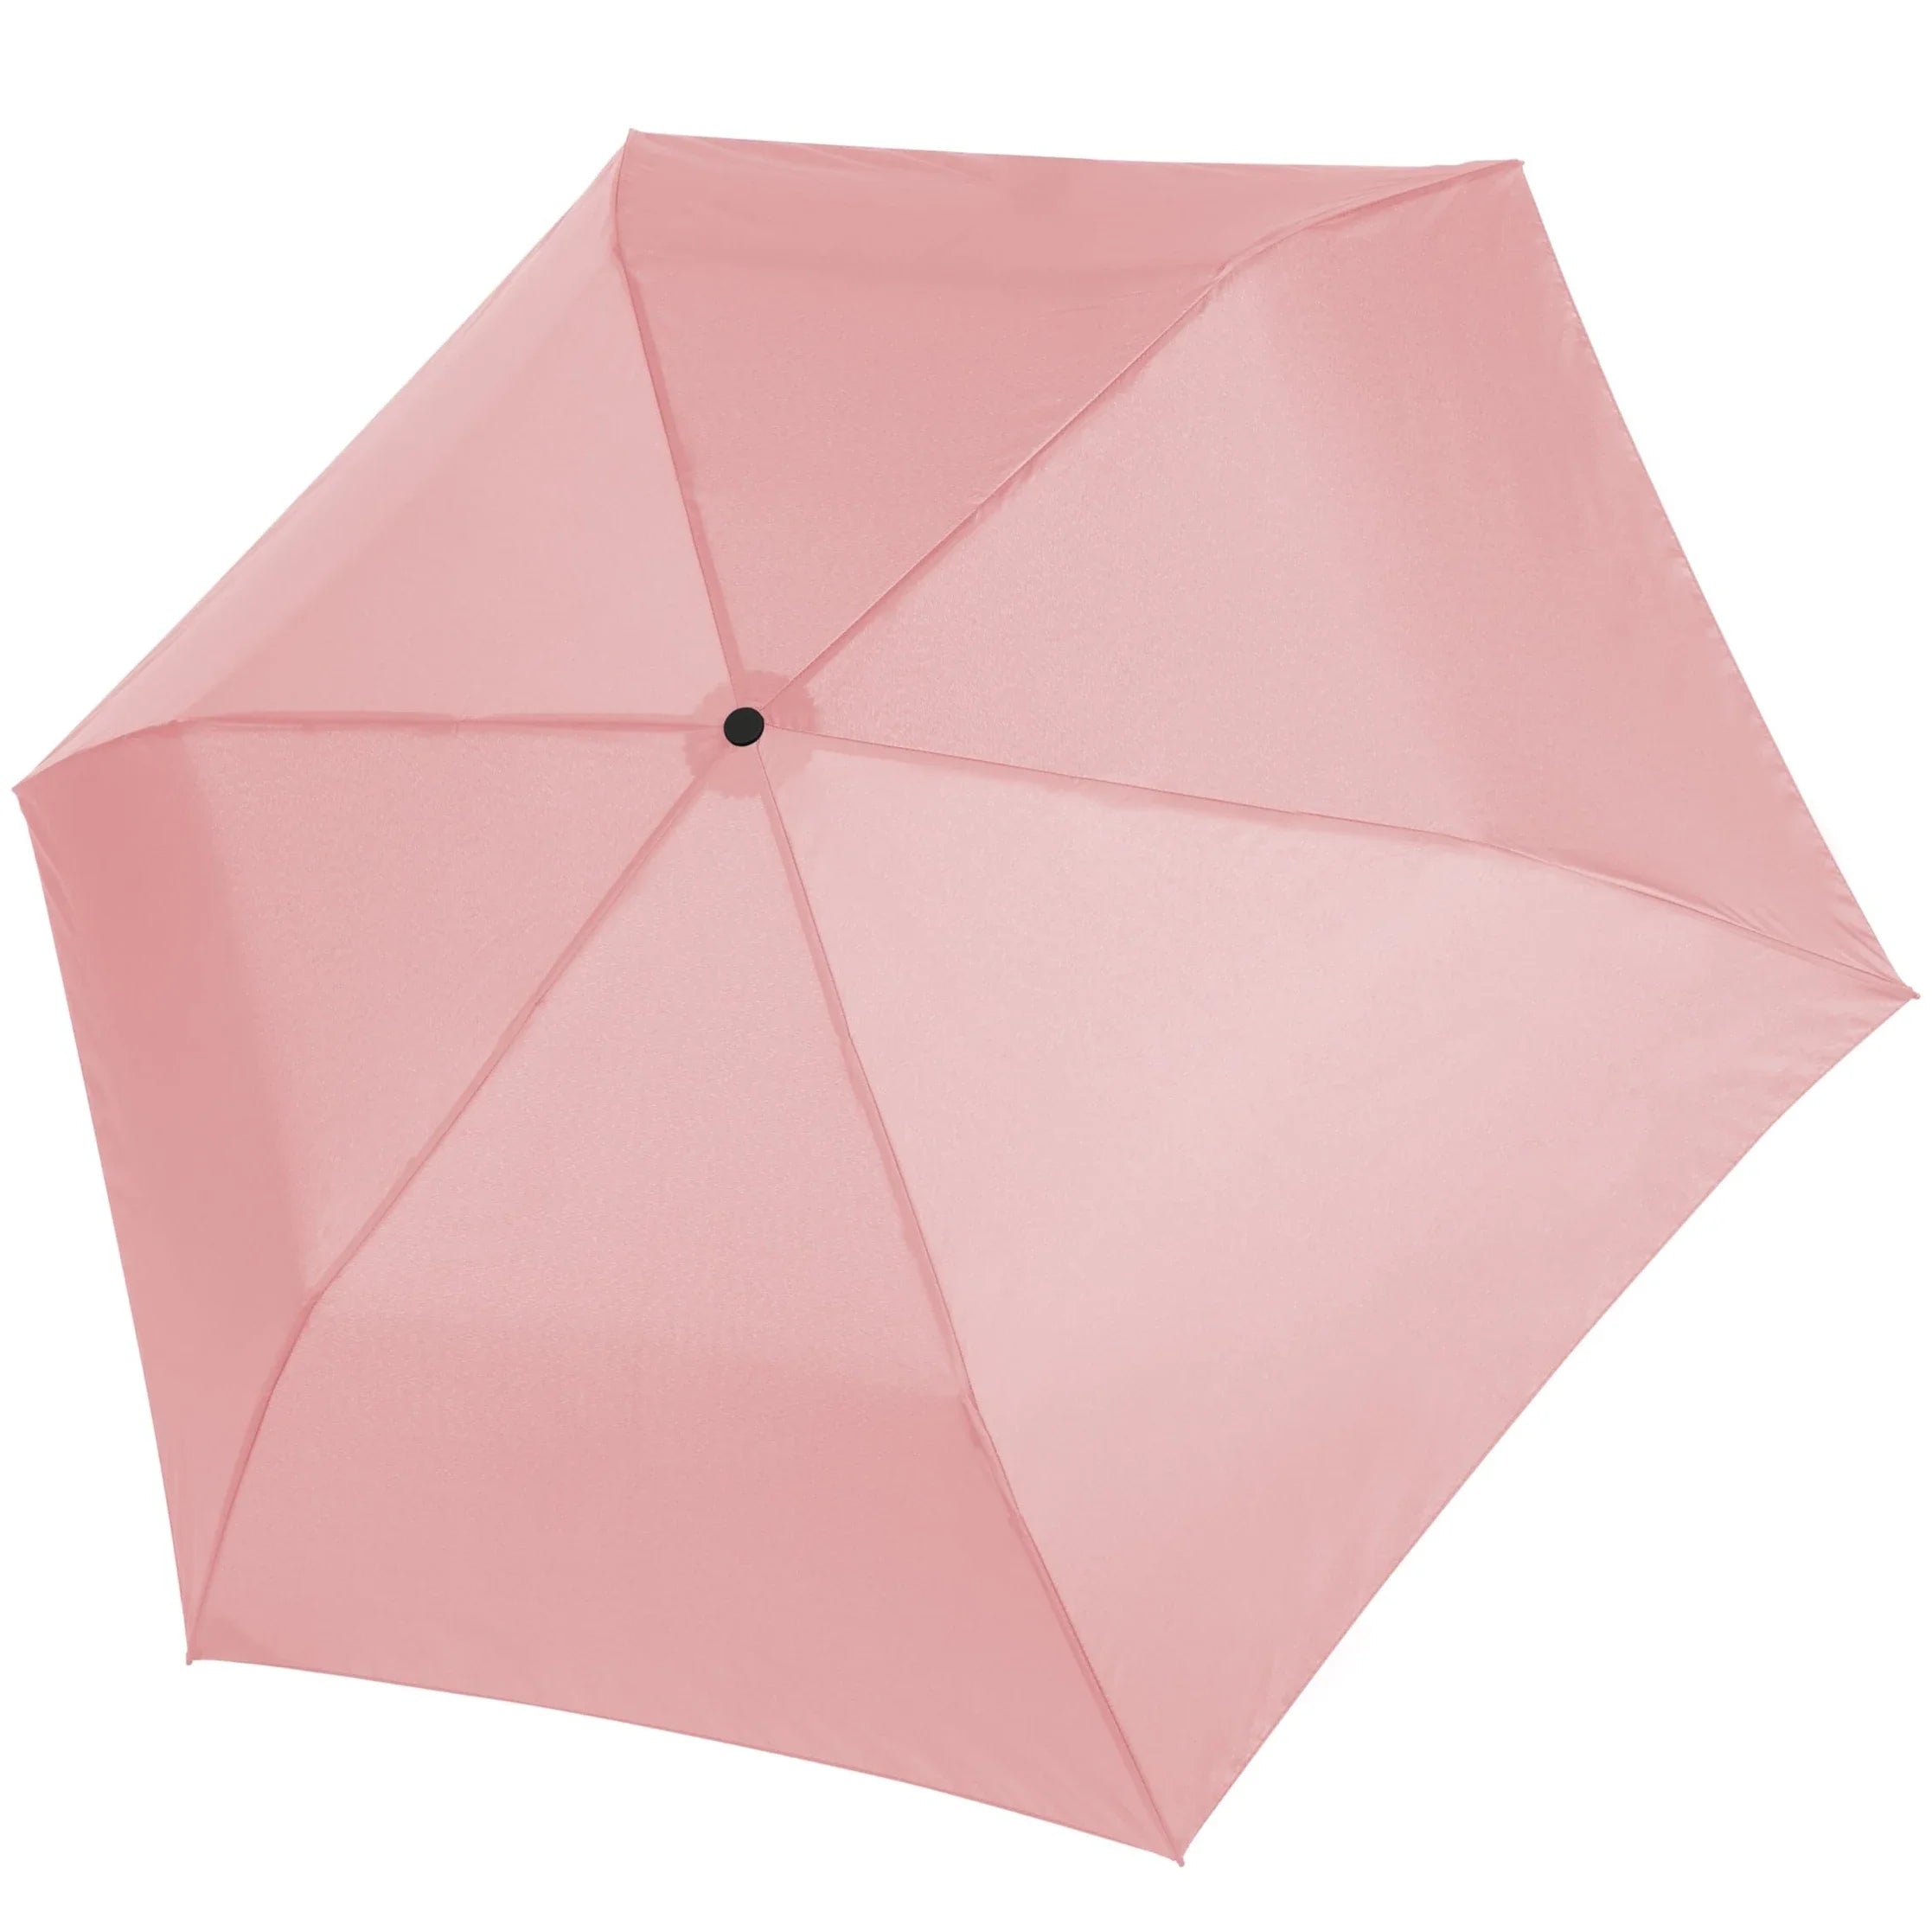 Parapluies pliants Doppler Parapluie pliant Zero99 21 cm - ombre rose